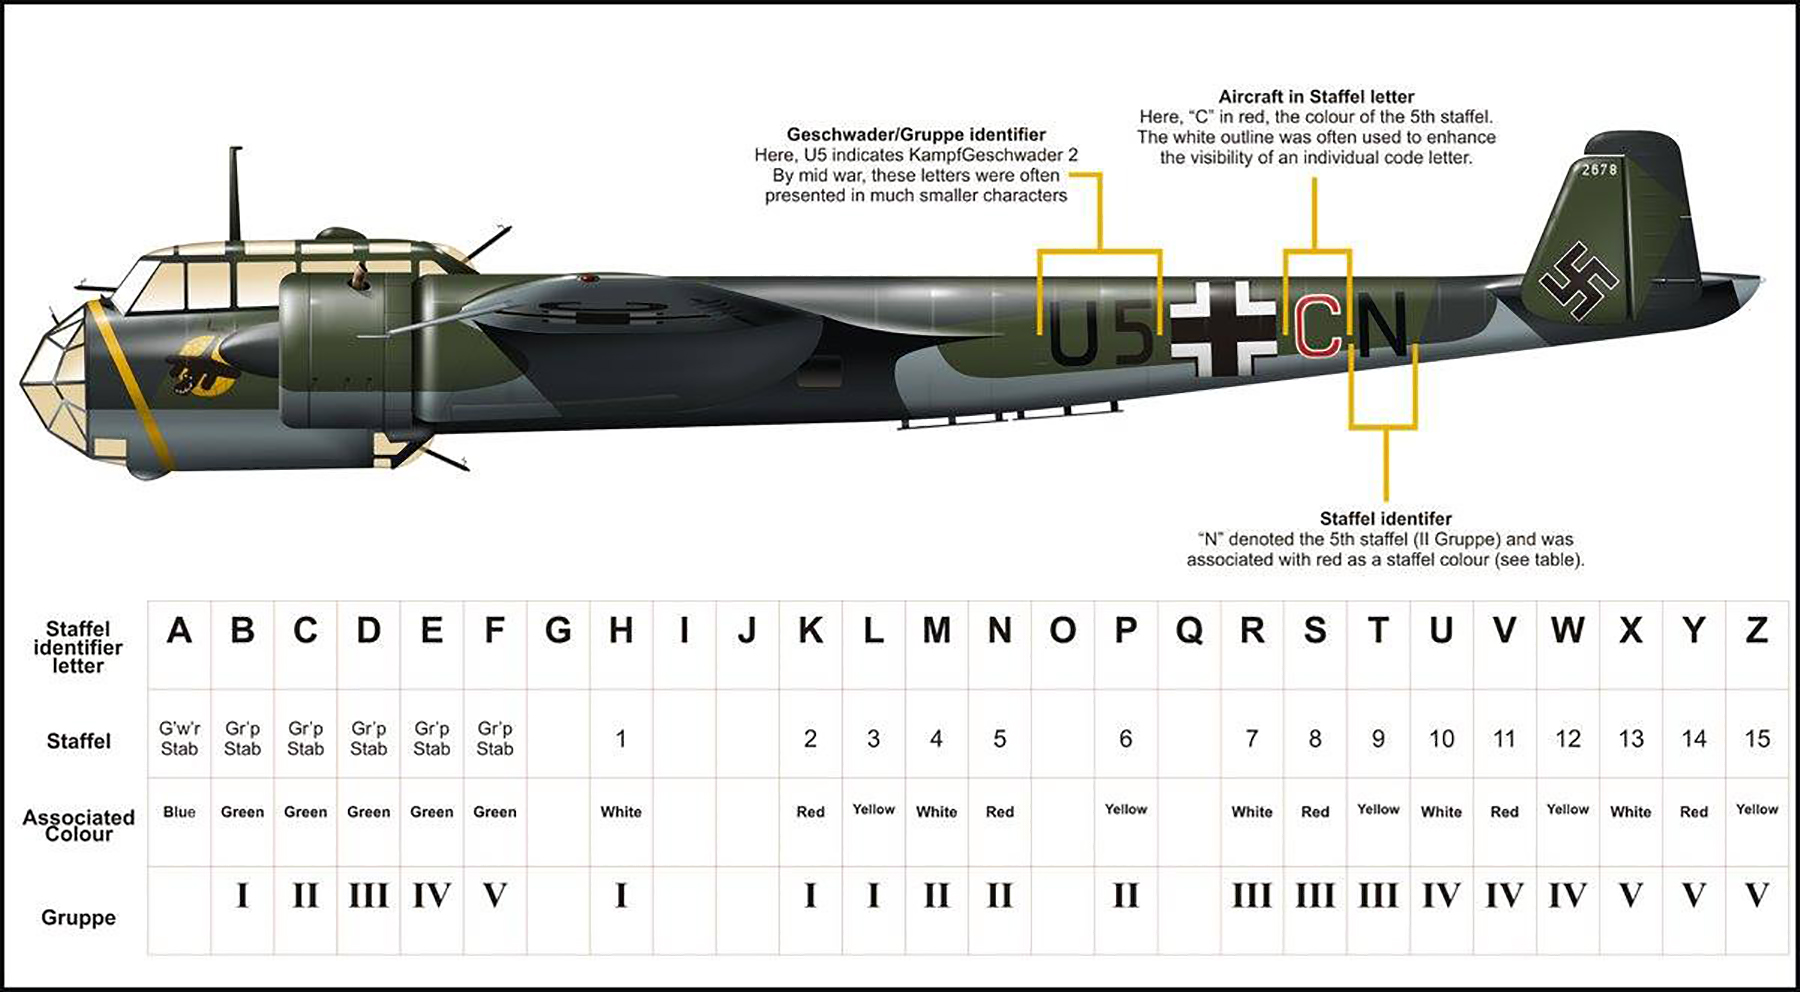 Dornier Do 17Z 4.KG2 U5+CN profile showing Luftwaffe bomber staffel and gruppe letter codes 0A